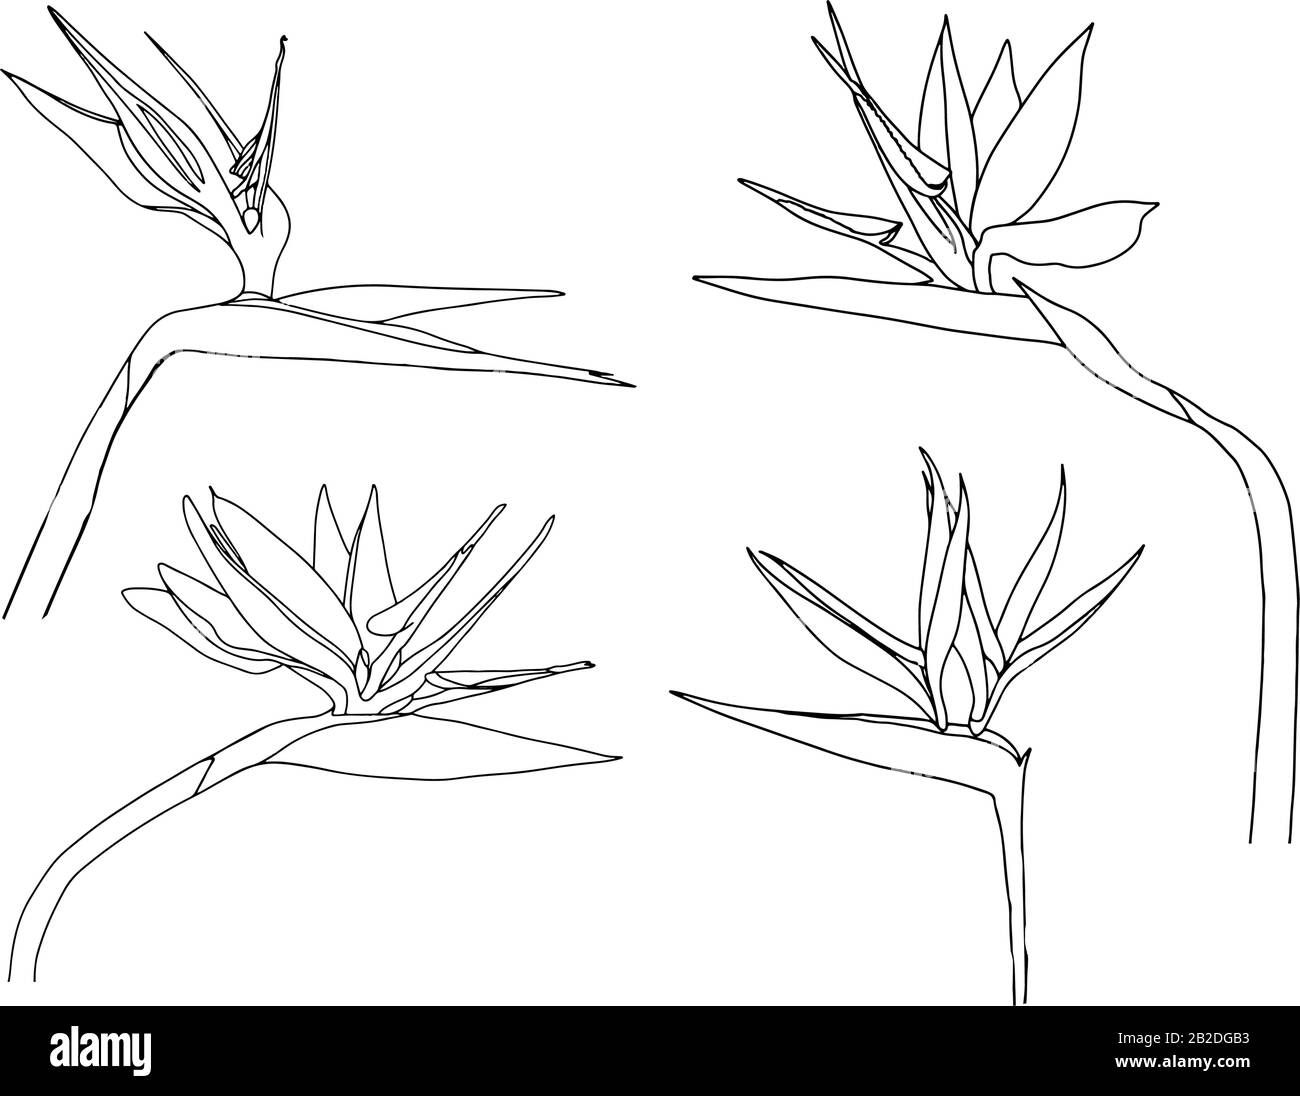 Set Strelitzia reginae tropicale sud africa fiore isolato su sfondo bianco. Vector Illustration.Outline tattoo print,logo.bird of Paradise. Illustrazione Vettoriale